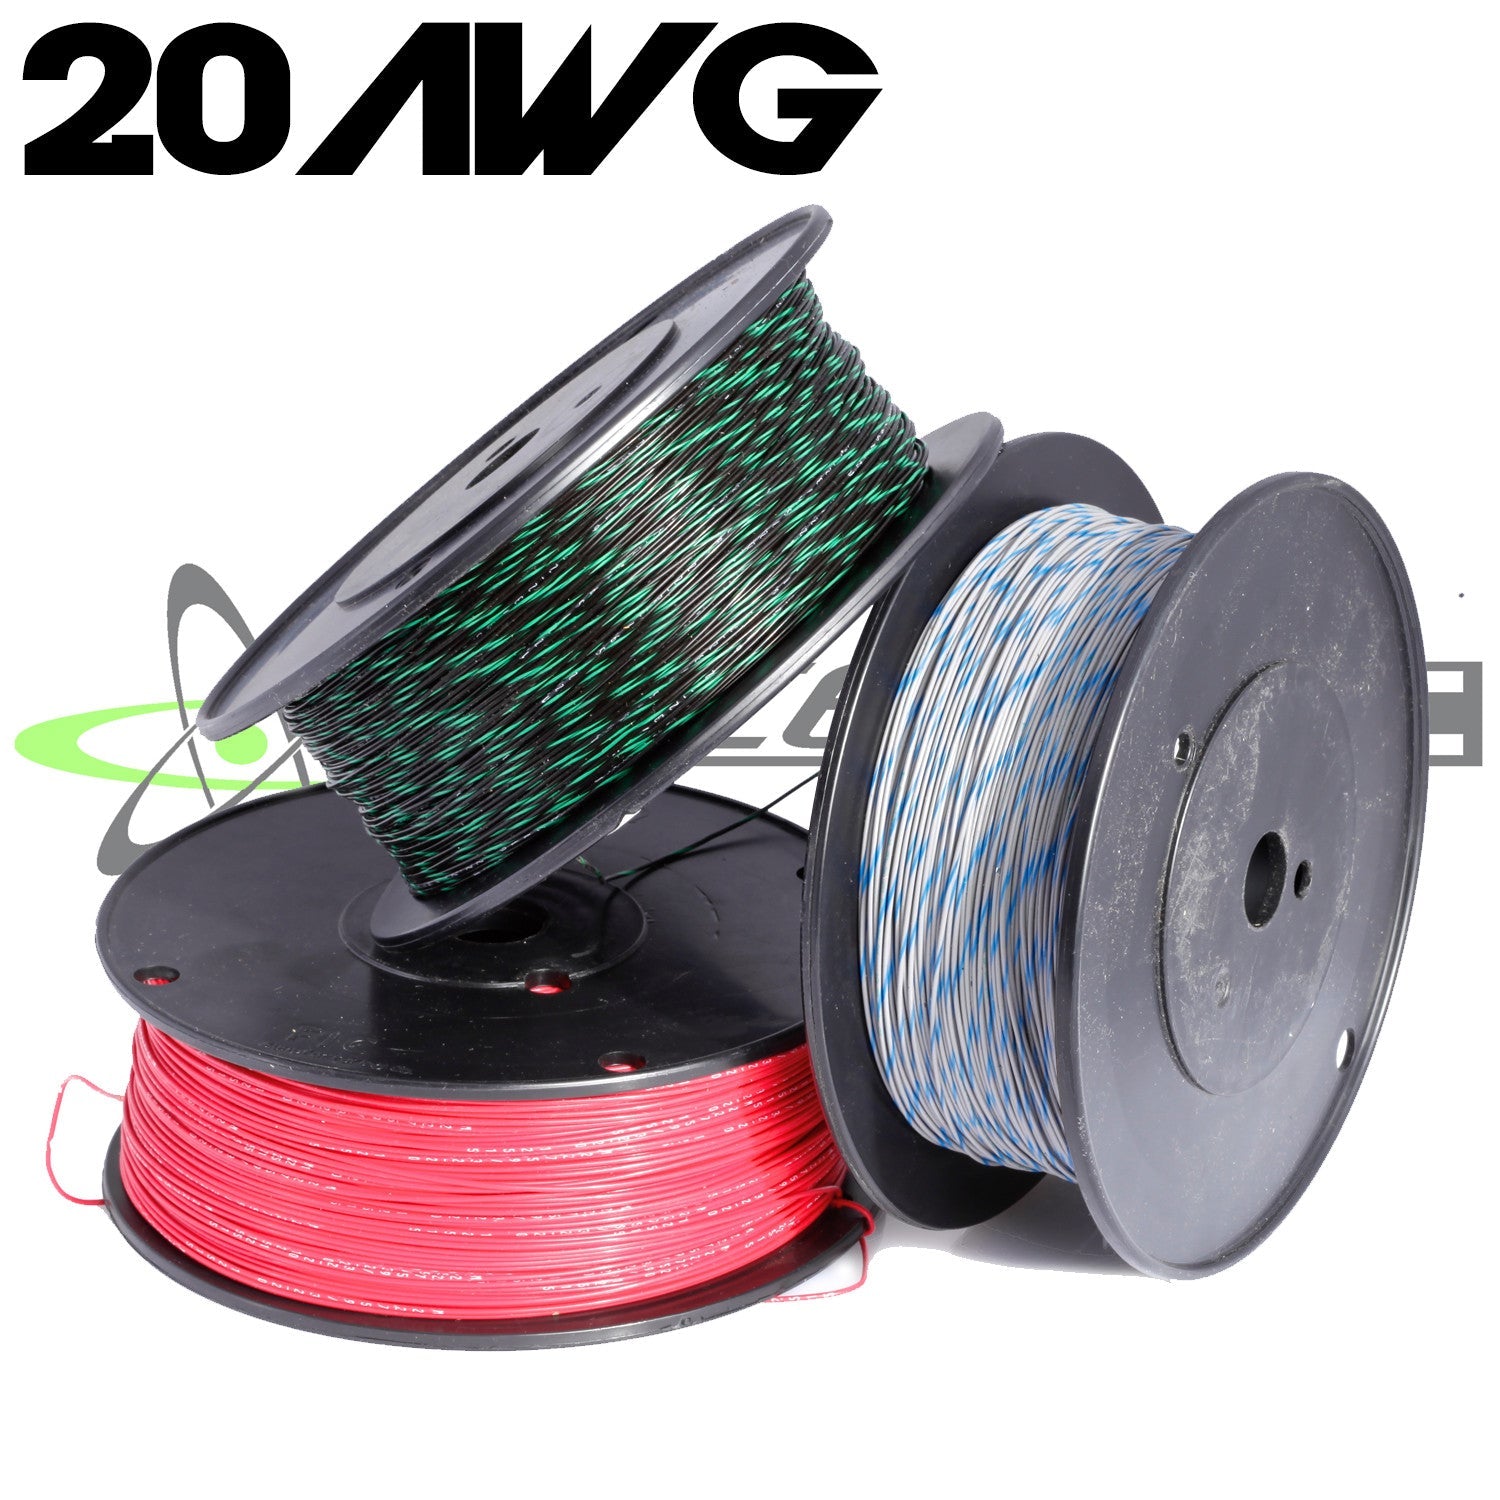 20 AWG M22759/32 Tefzel Wire (Black w/ Stripe)